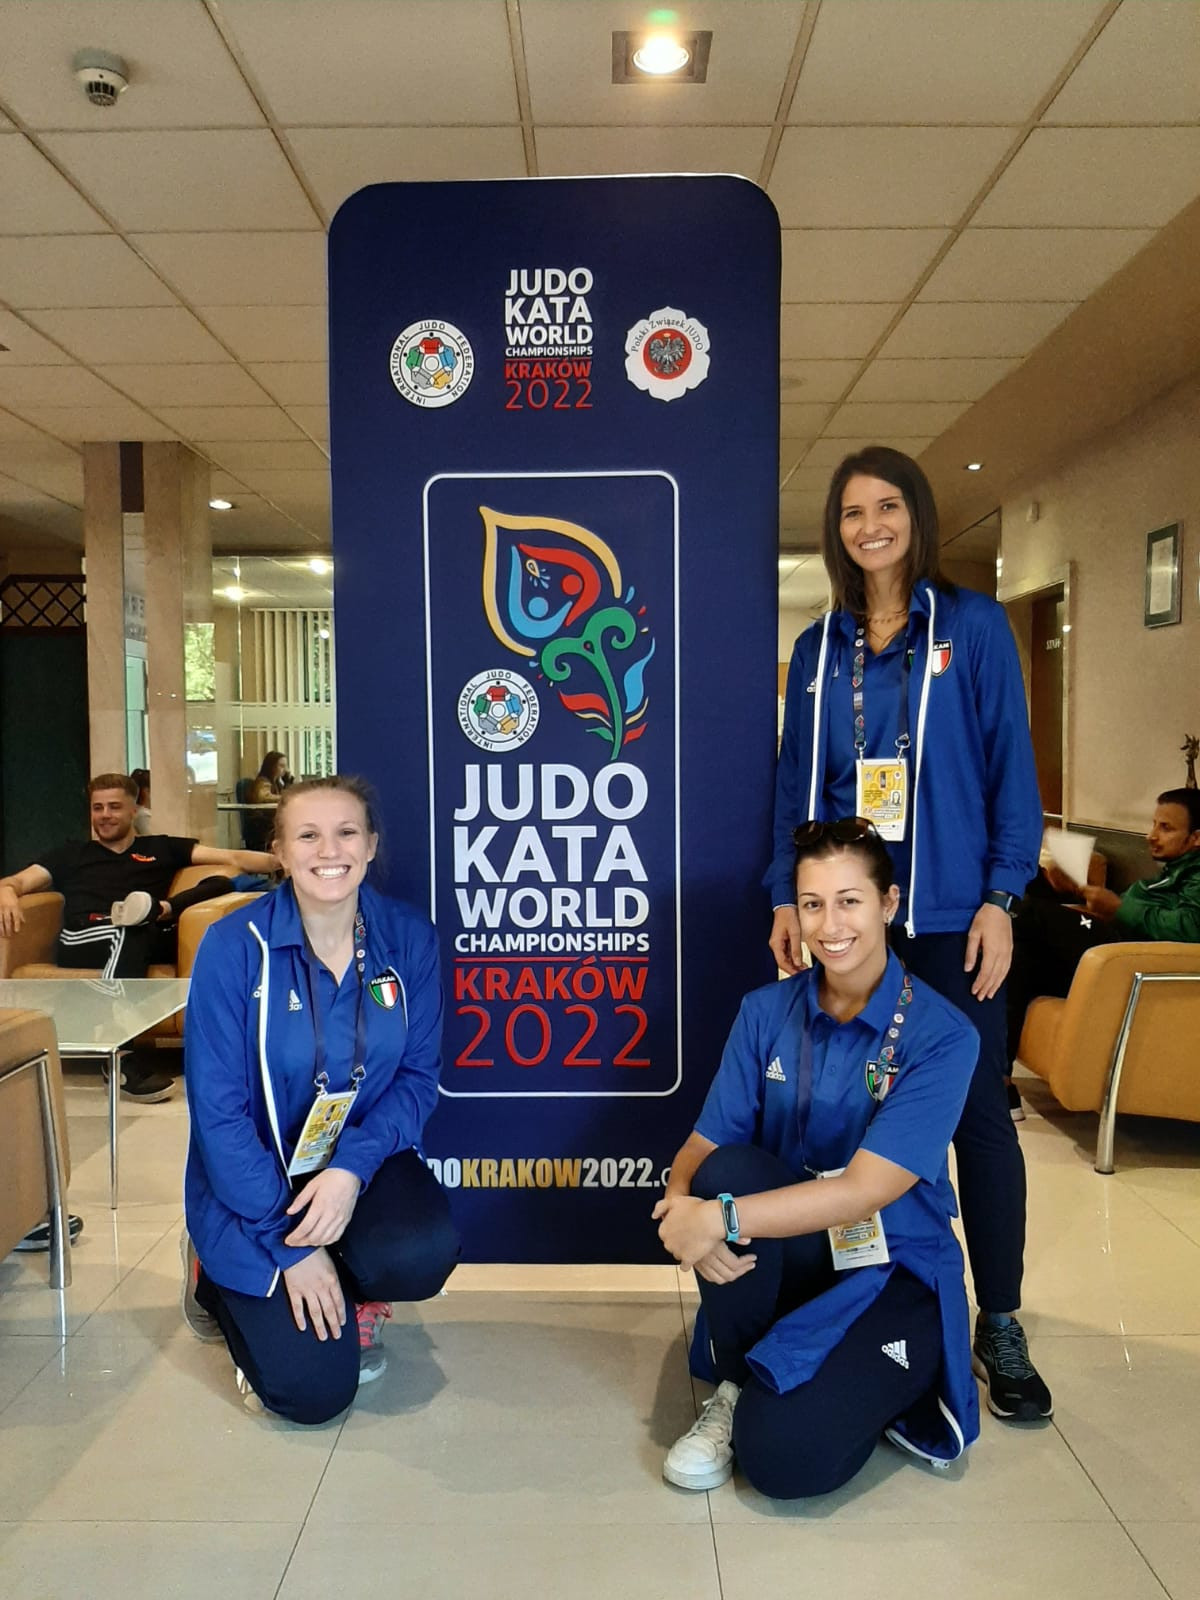 Campionato del Mondo di Judo Kata Cracovia 2022